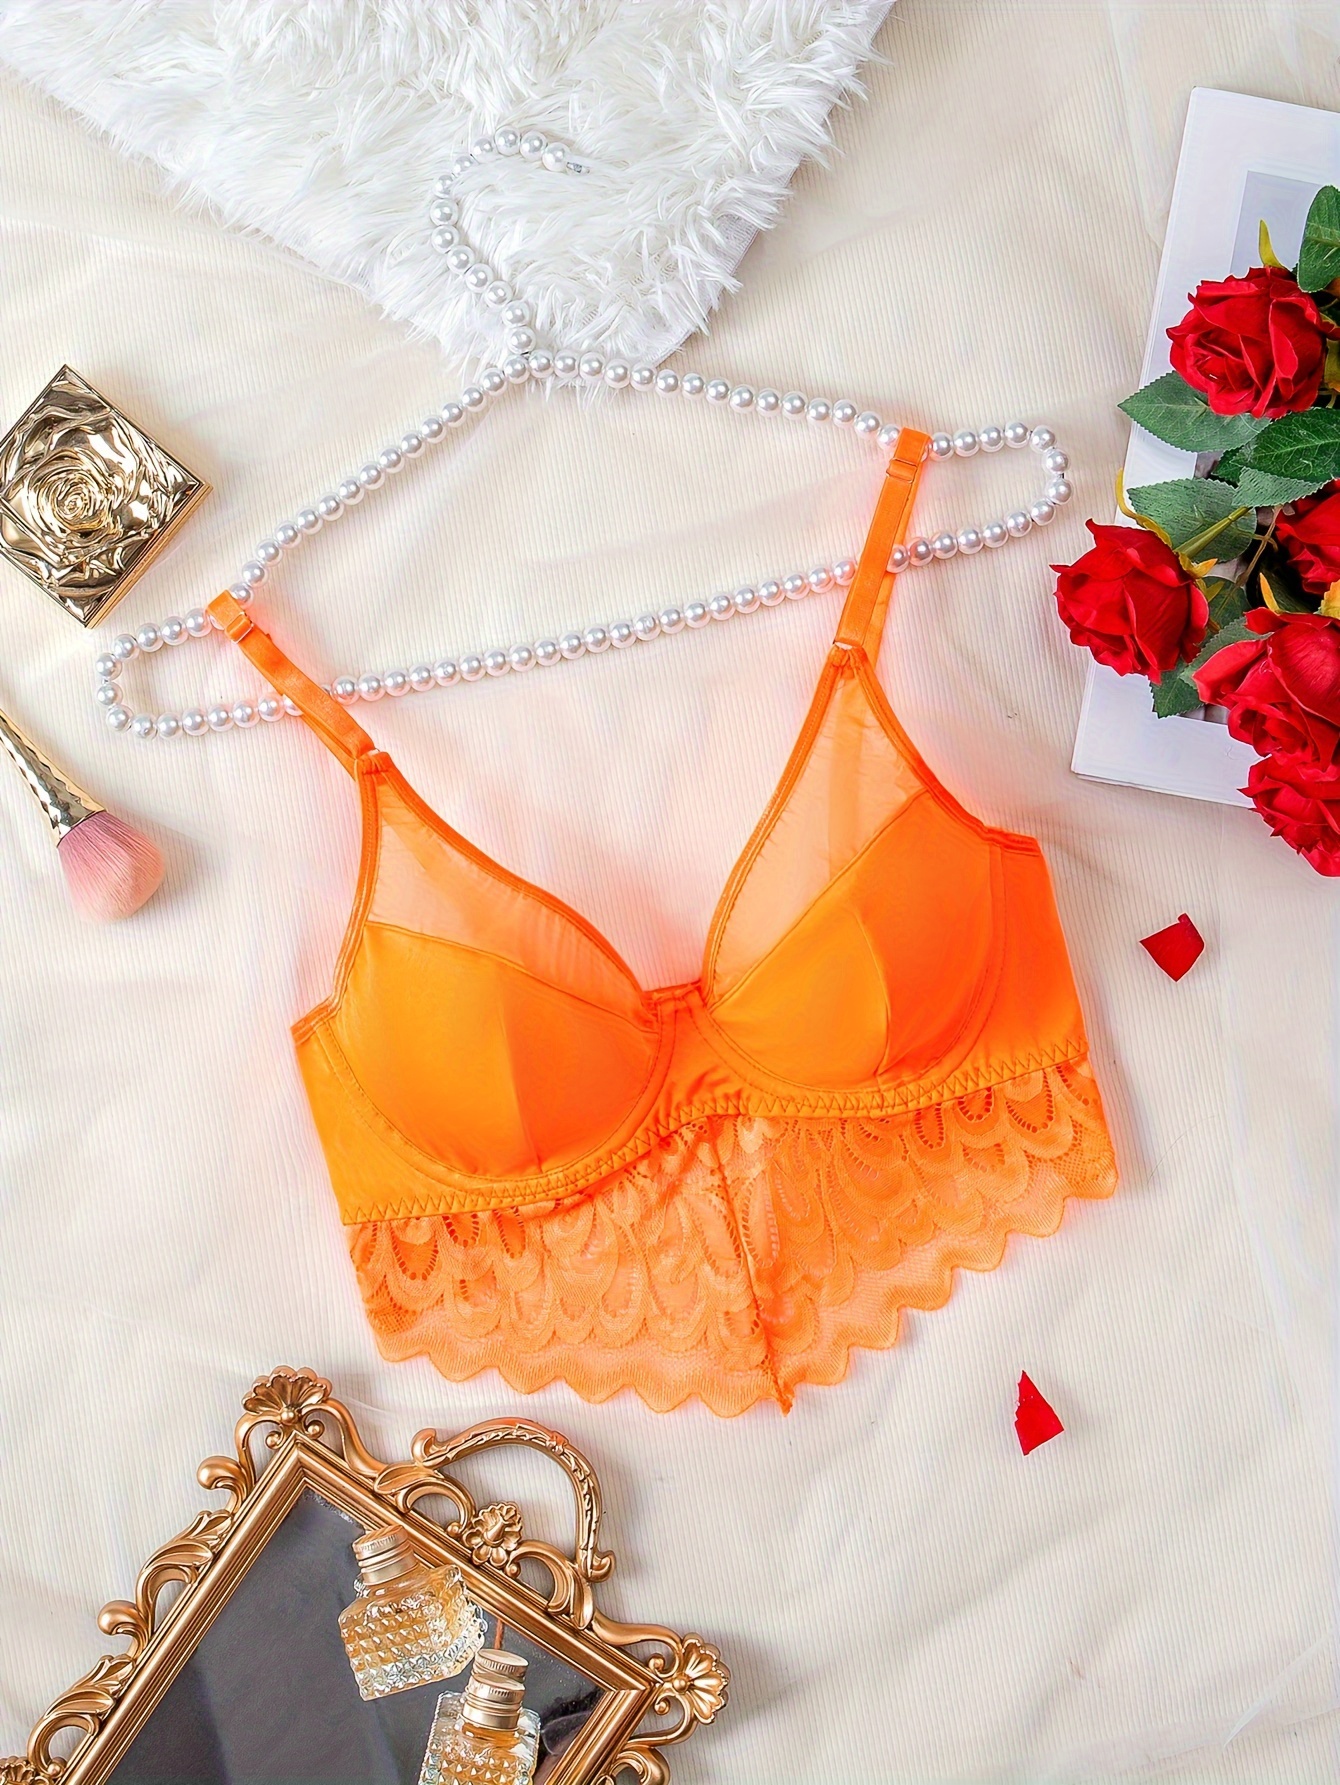 Bodycare Bridal Orange color Bra & Panty Set in Nylon Elastane-6407ORG